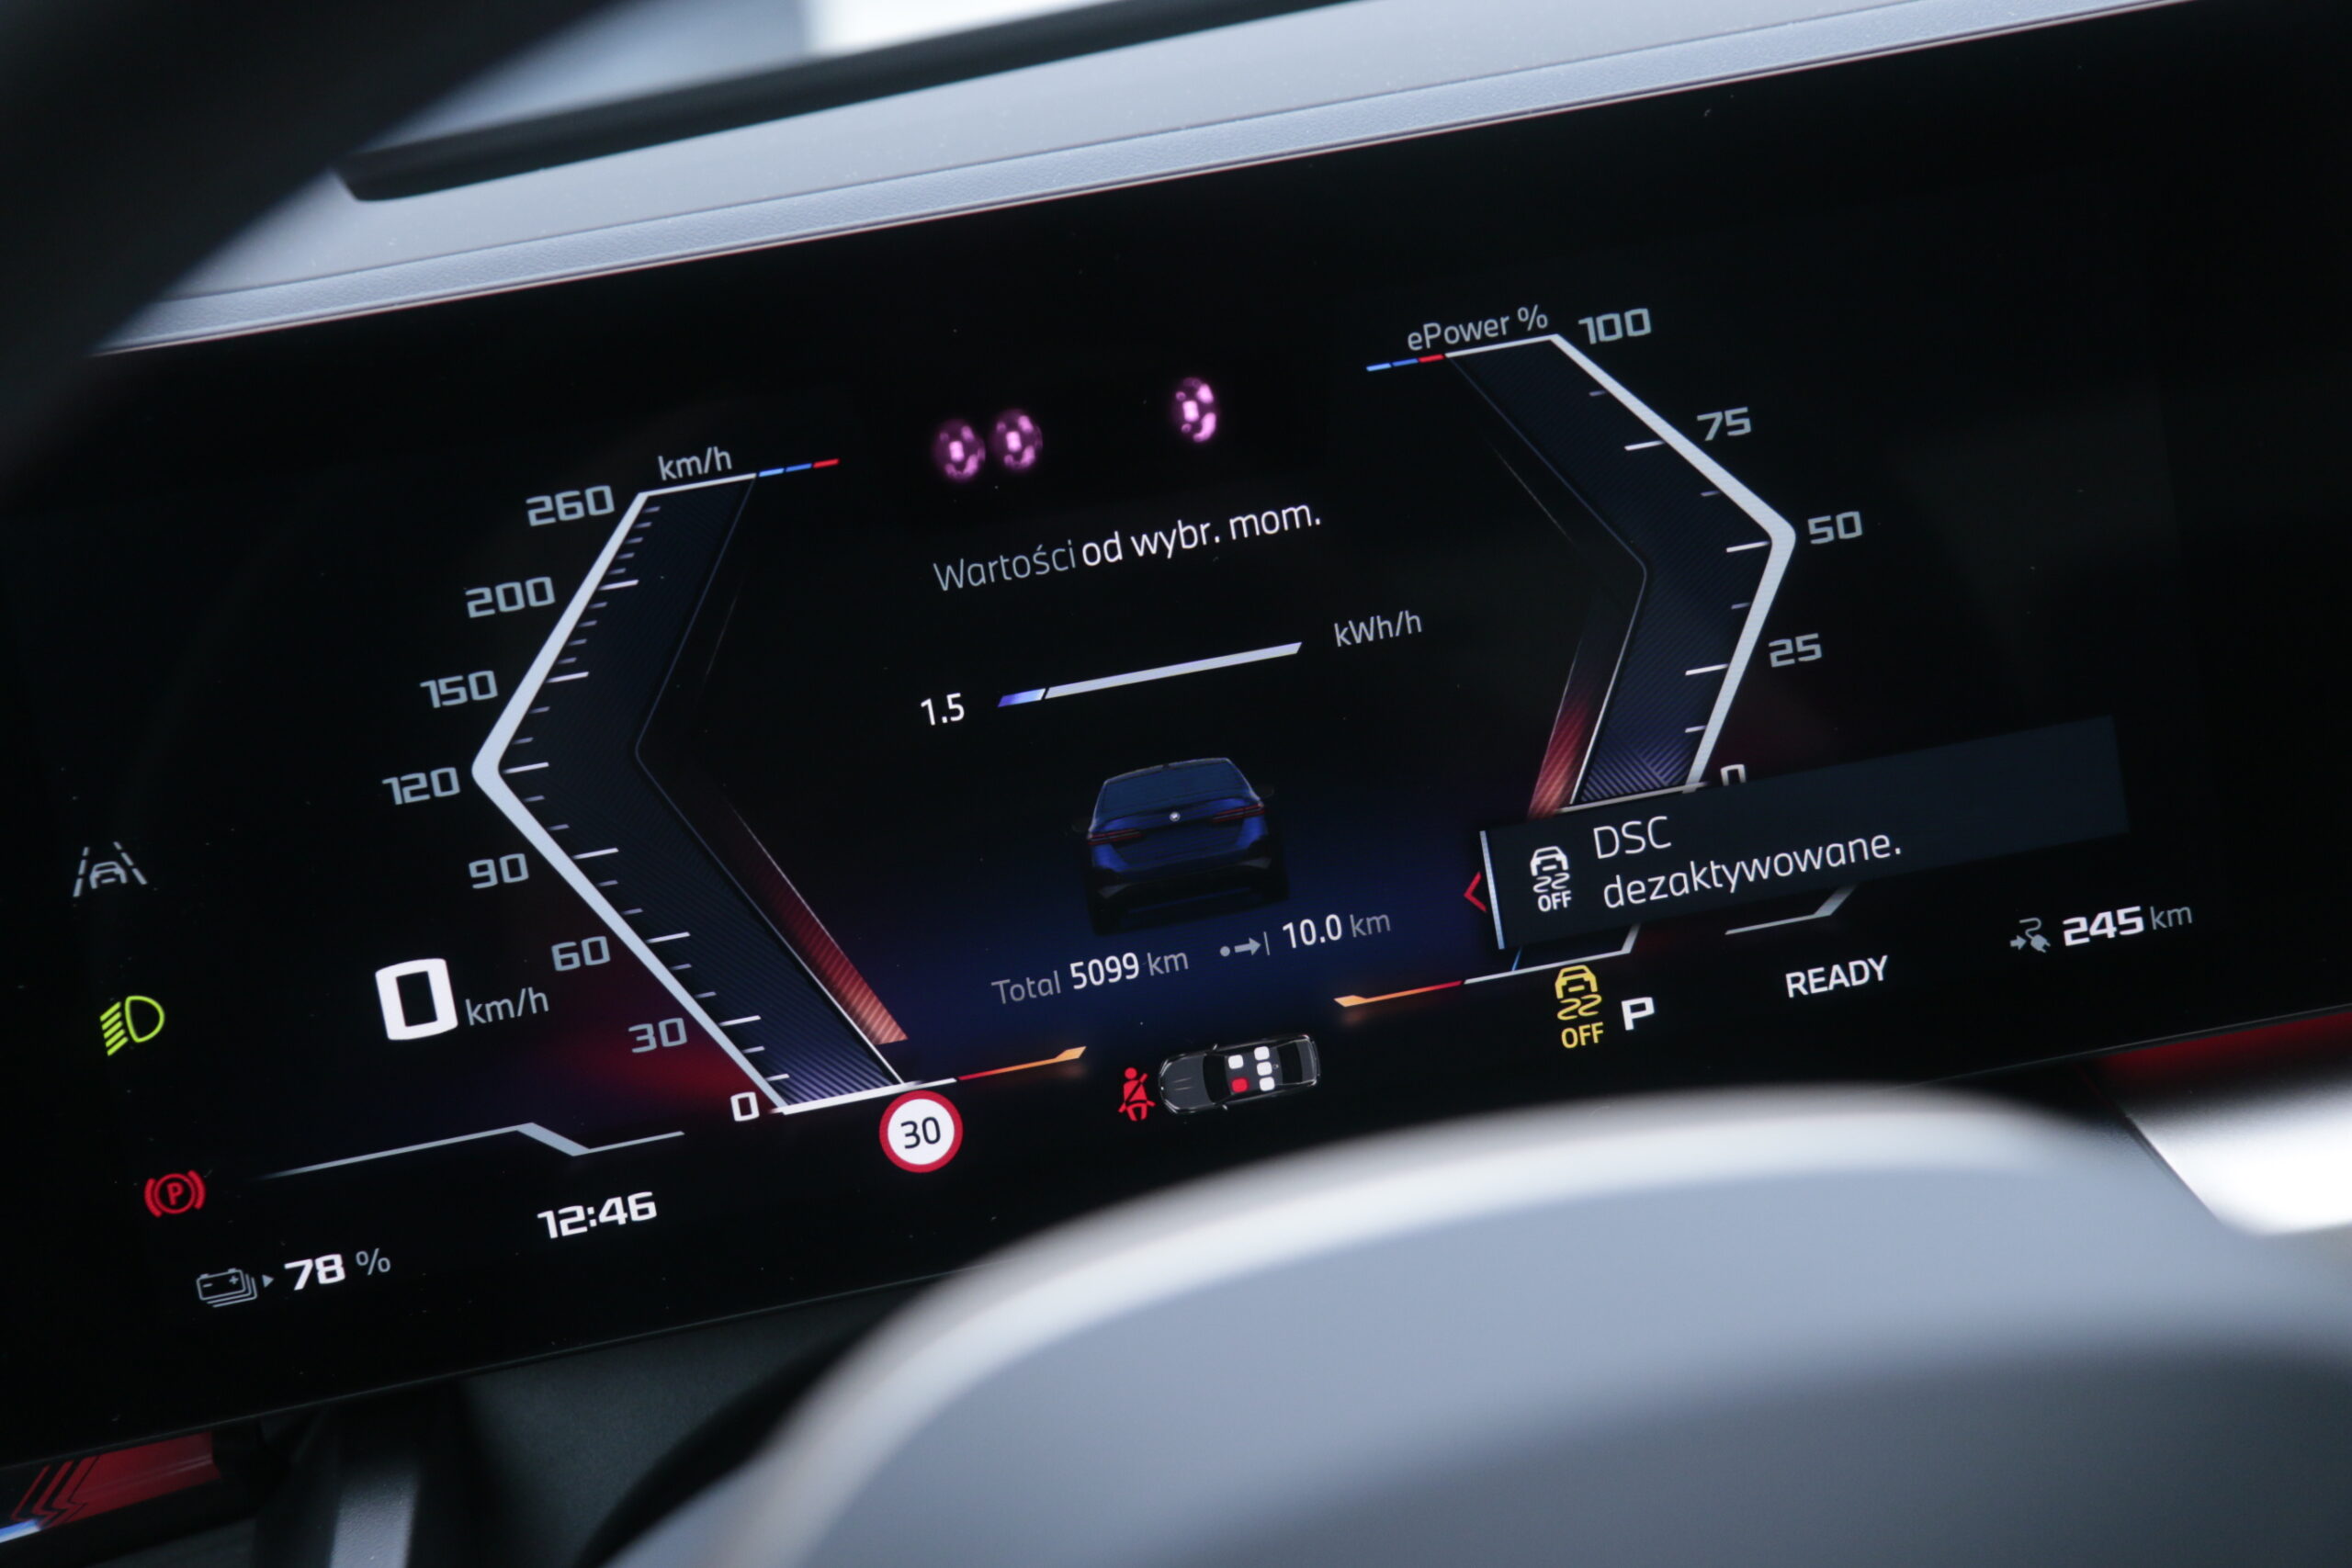 Wyświetlacz deski rozdzielczej samochodu elektrycznego BMW i5 pokazujący 0 km/h, stan naładowania baterii 78%, przejechane łącznie 5099 km, ikonę ograniczenia prędkości do 30 km/h oraz inne informacje dotyczące pojazdu.